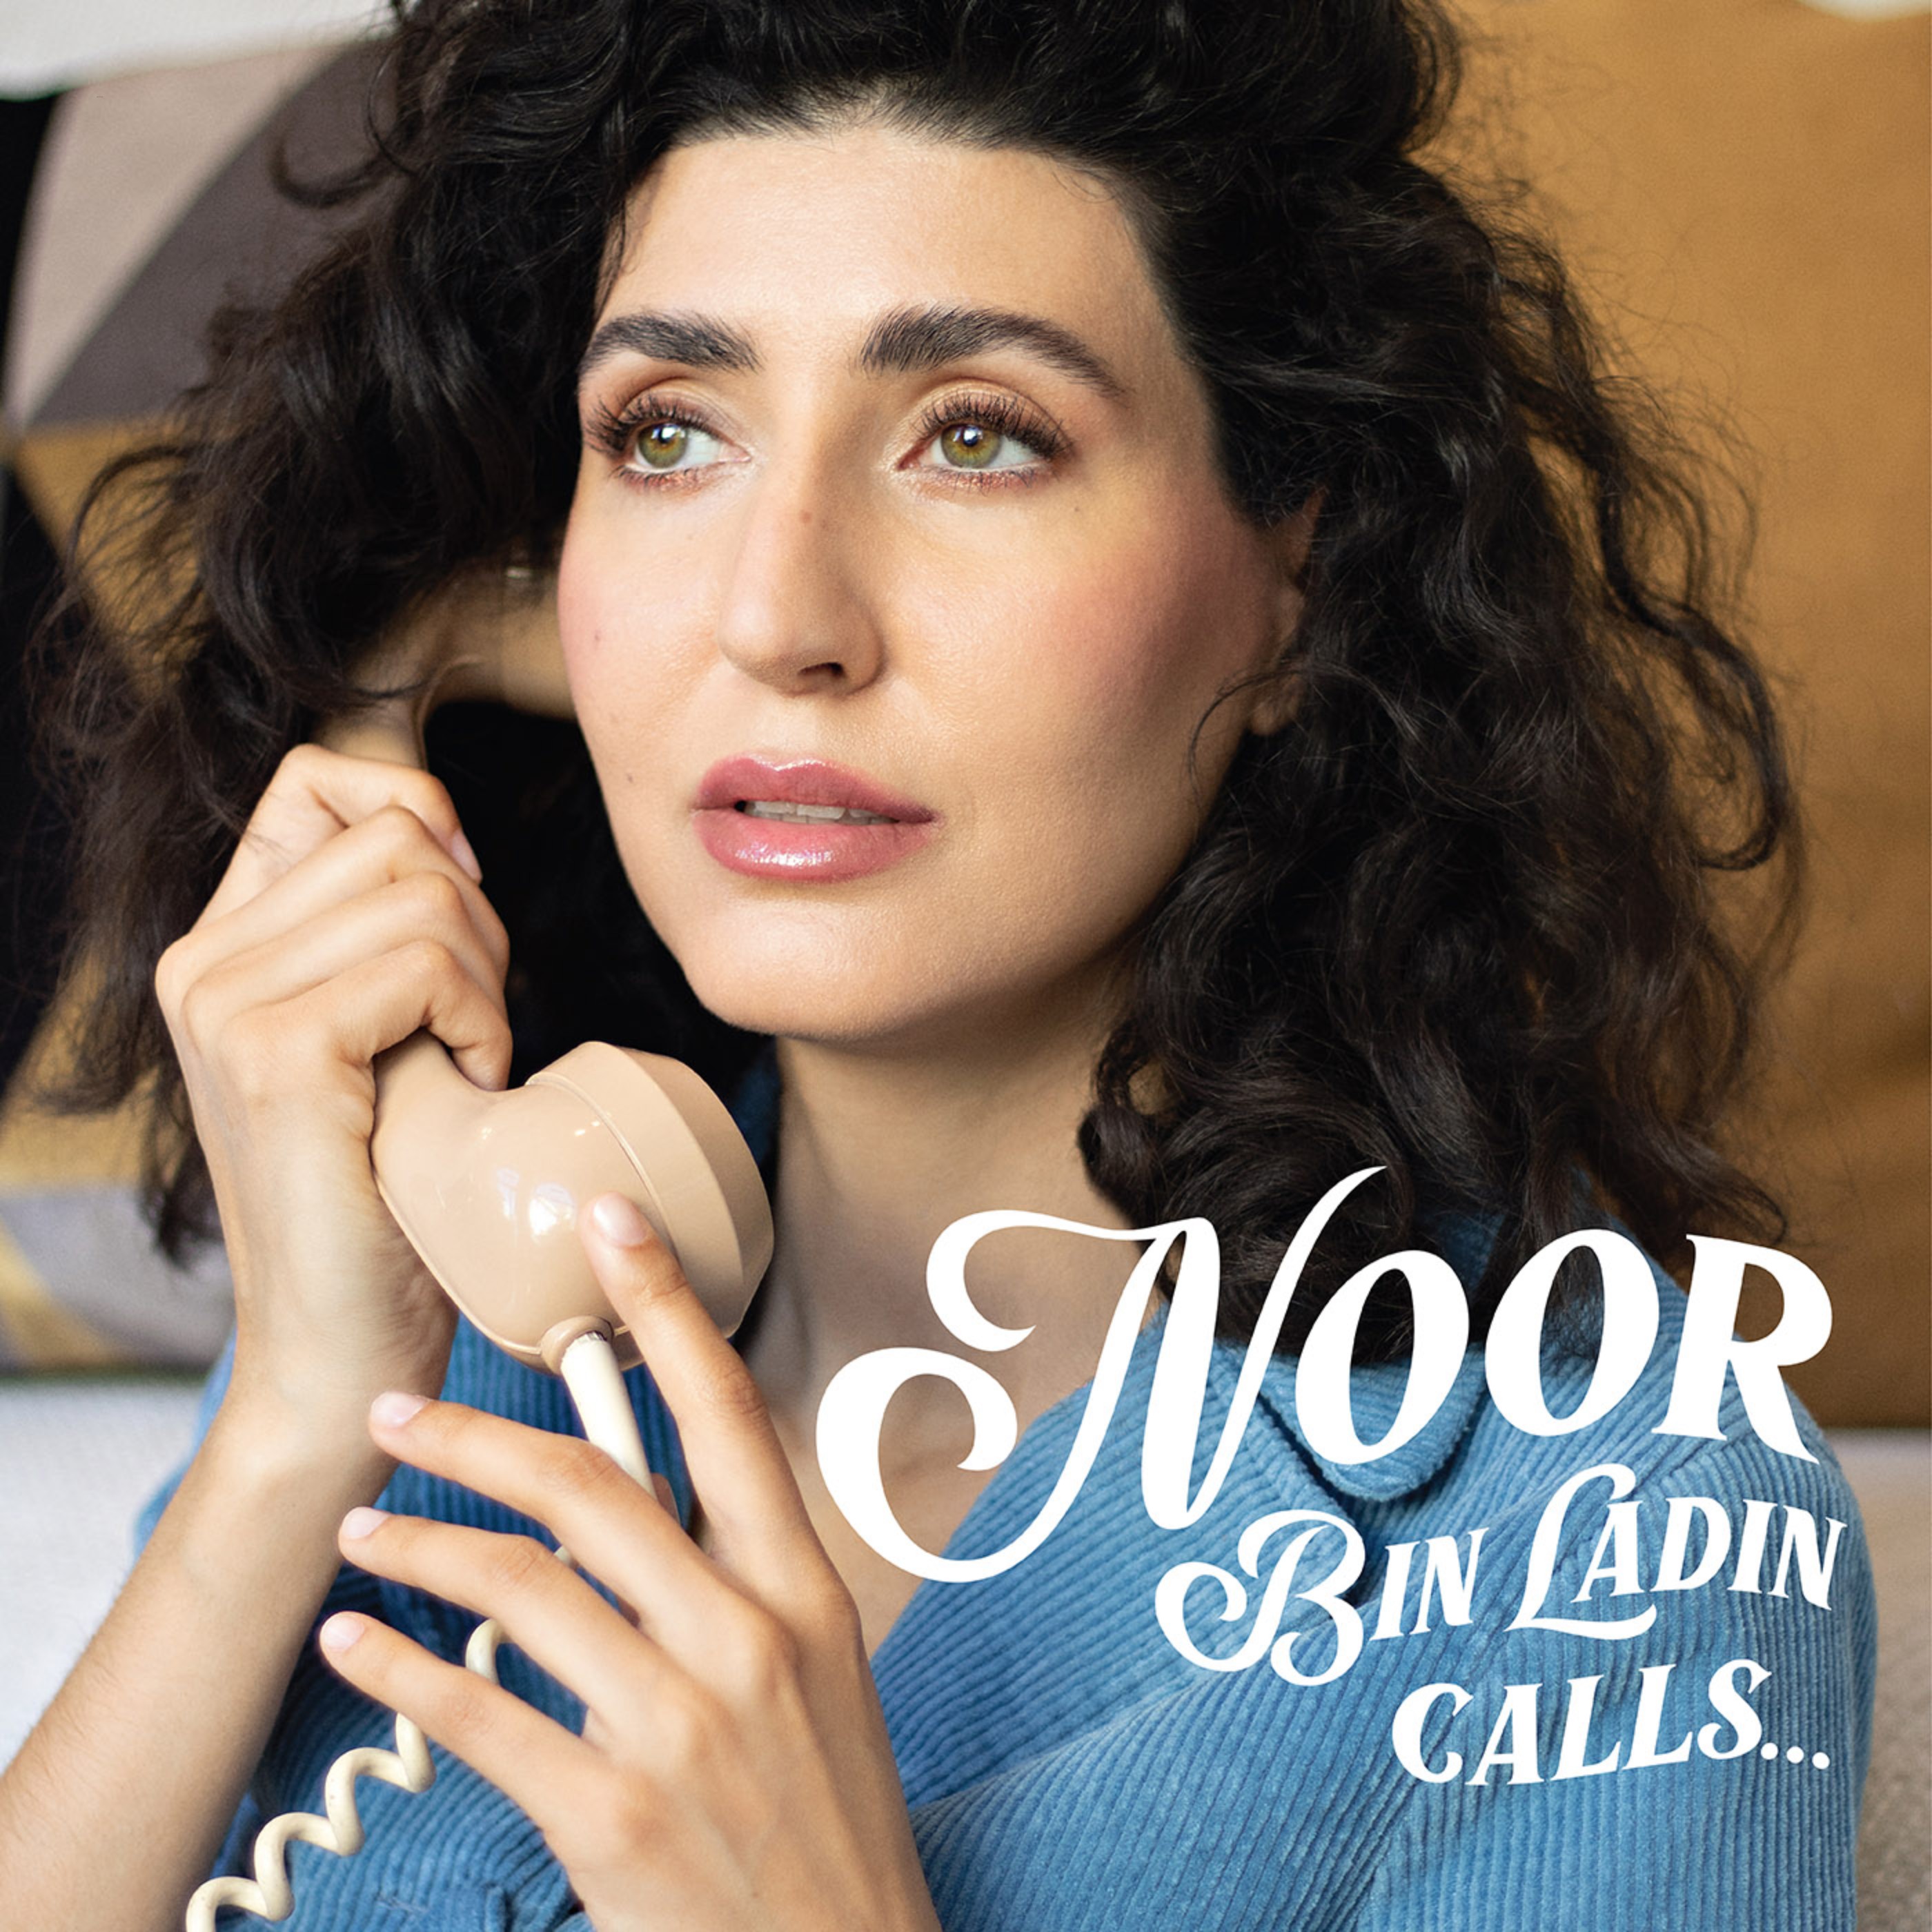 Noor Bin Ladin Calls...